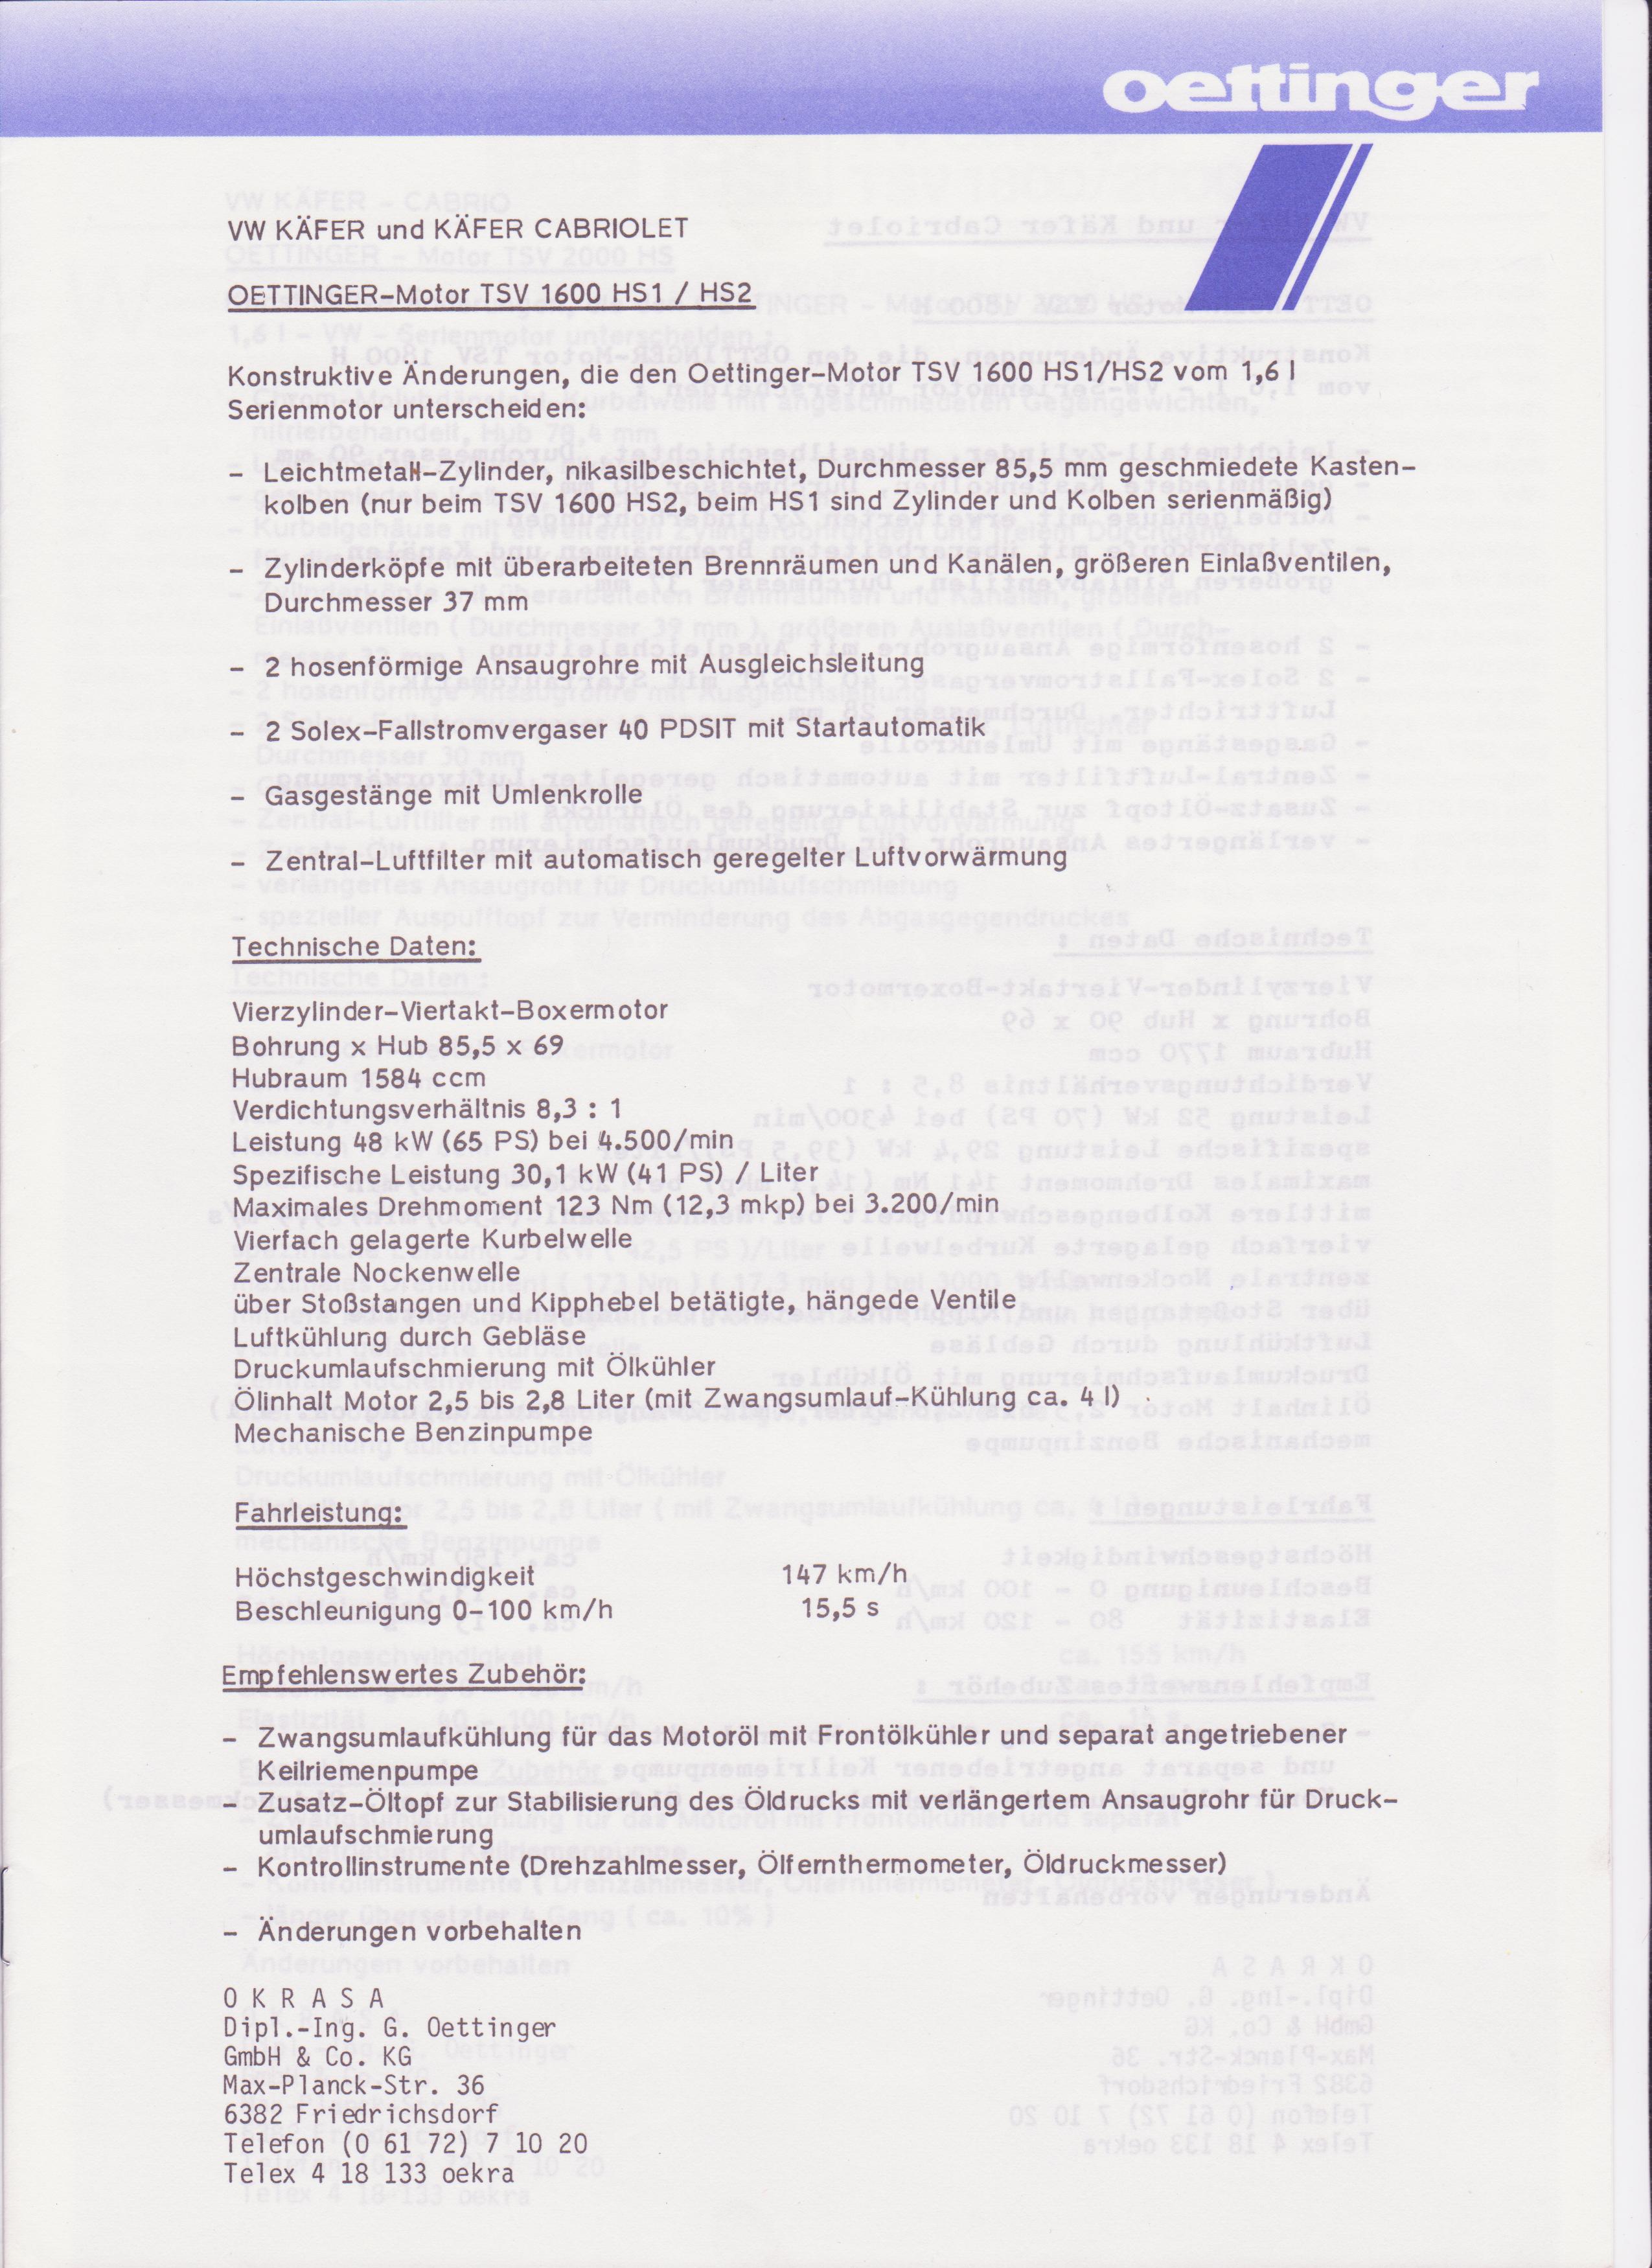 Les préparations oettinger - Page 3 43293719831001